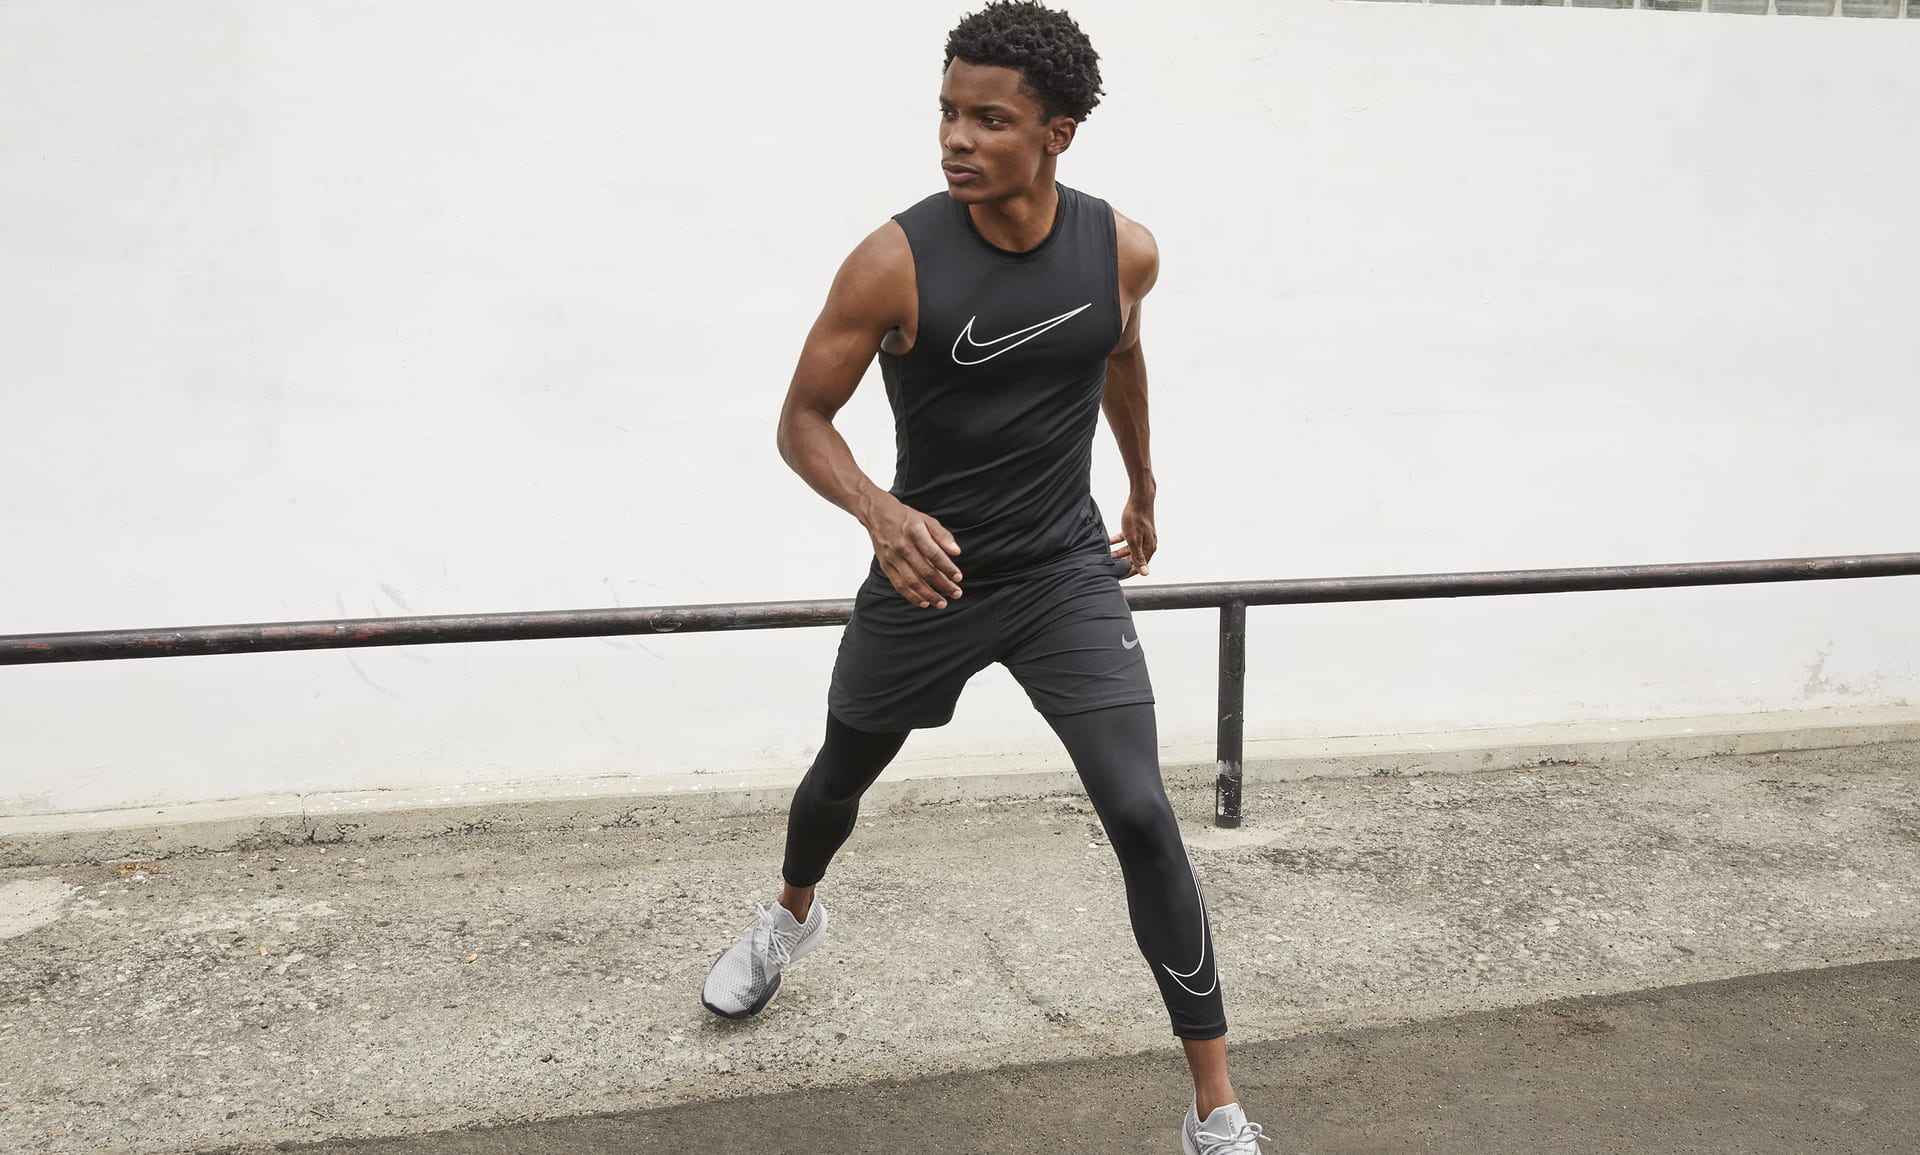 Nike Pro Dri-FIT Men's Tight-Fit Sleeveless Top. Nike ID